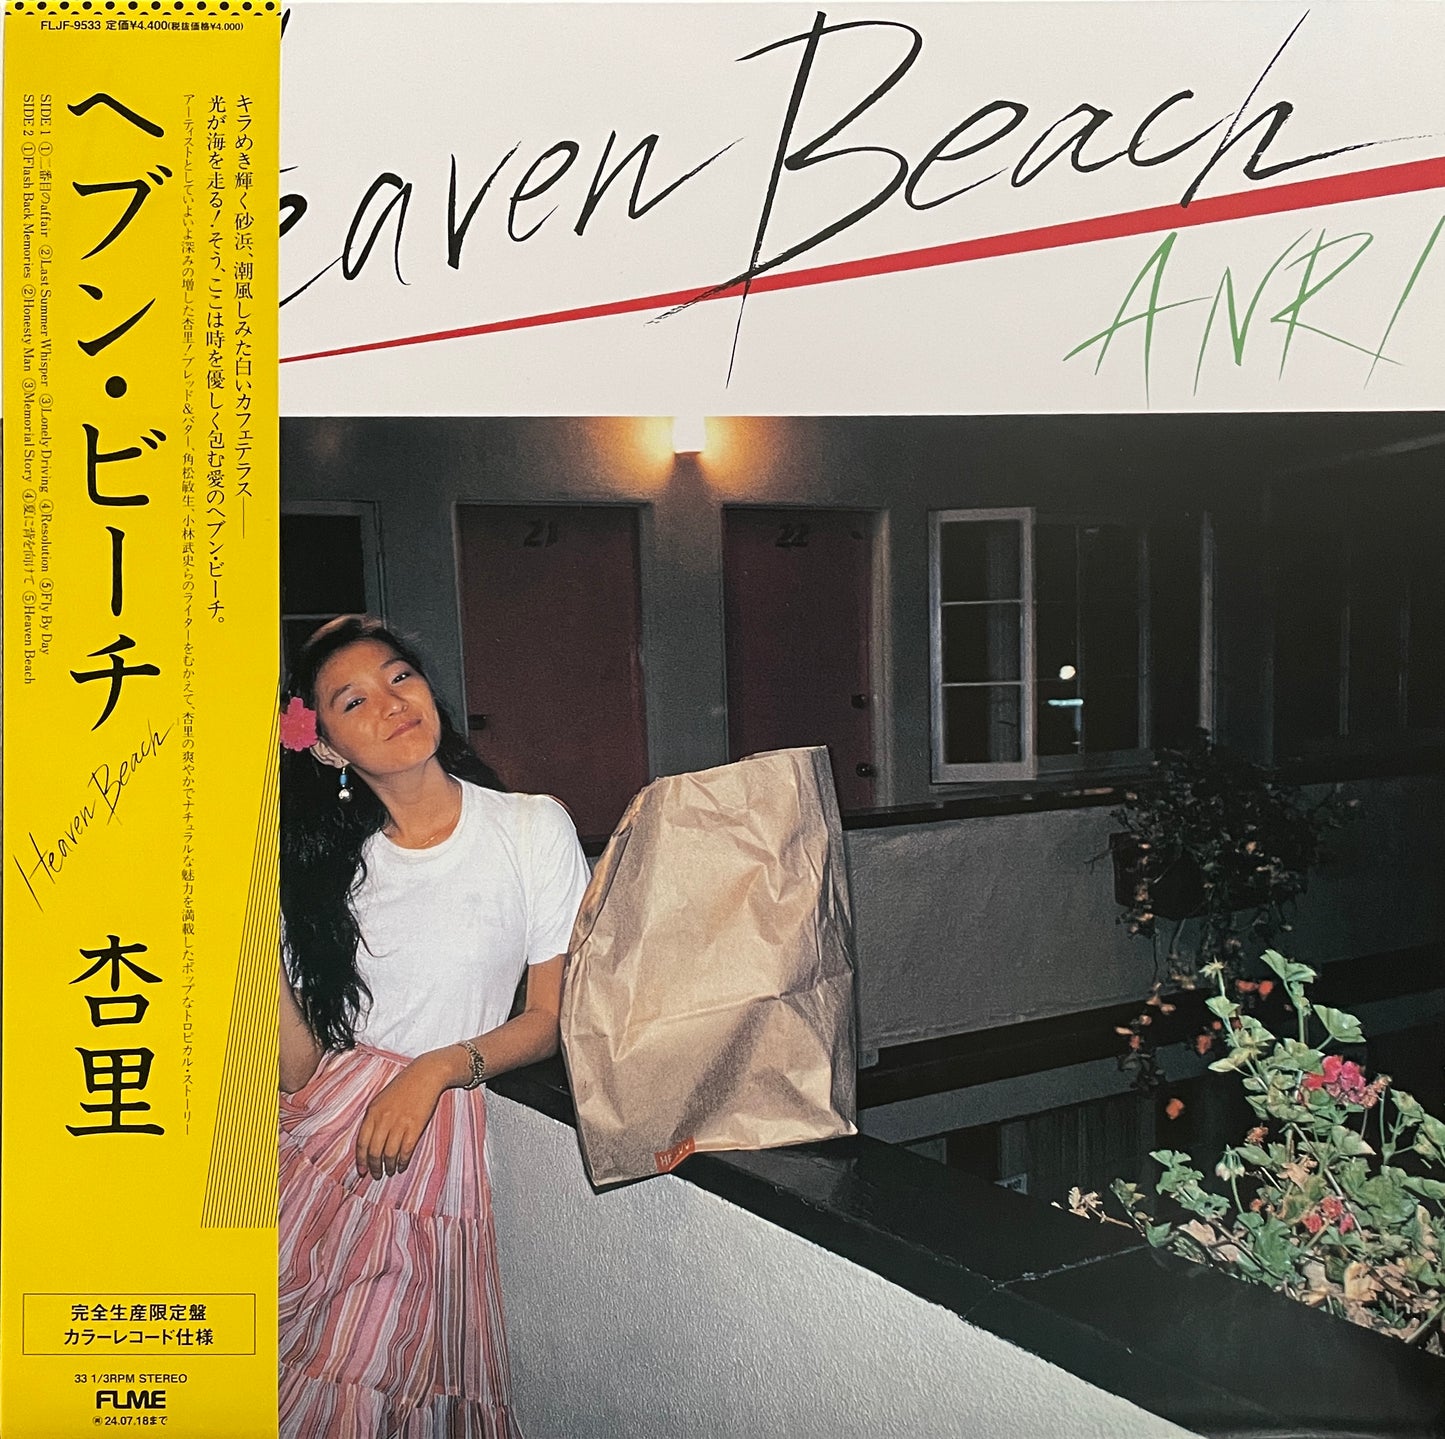 Anri "Heaven Beach" (2023 reissue)